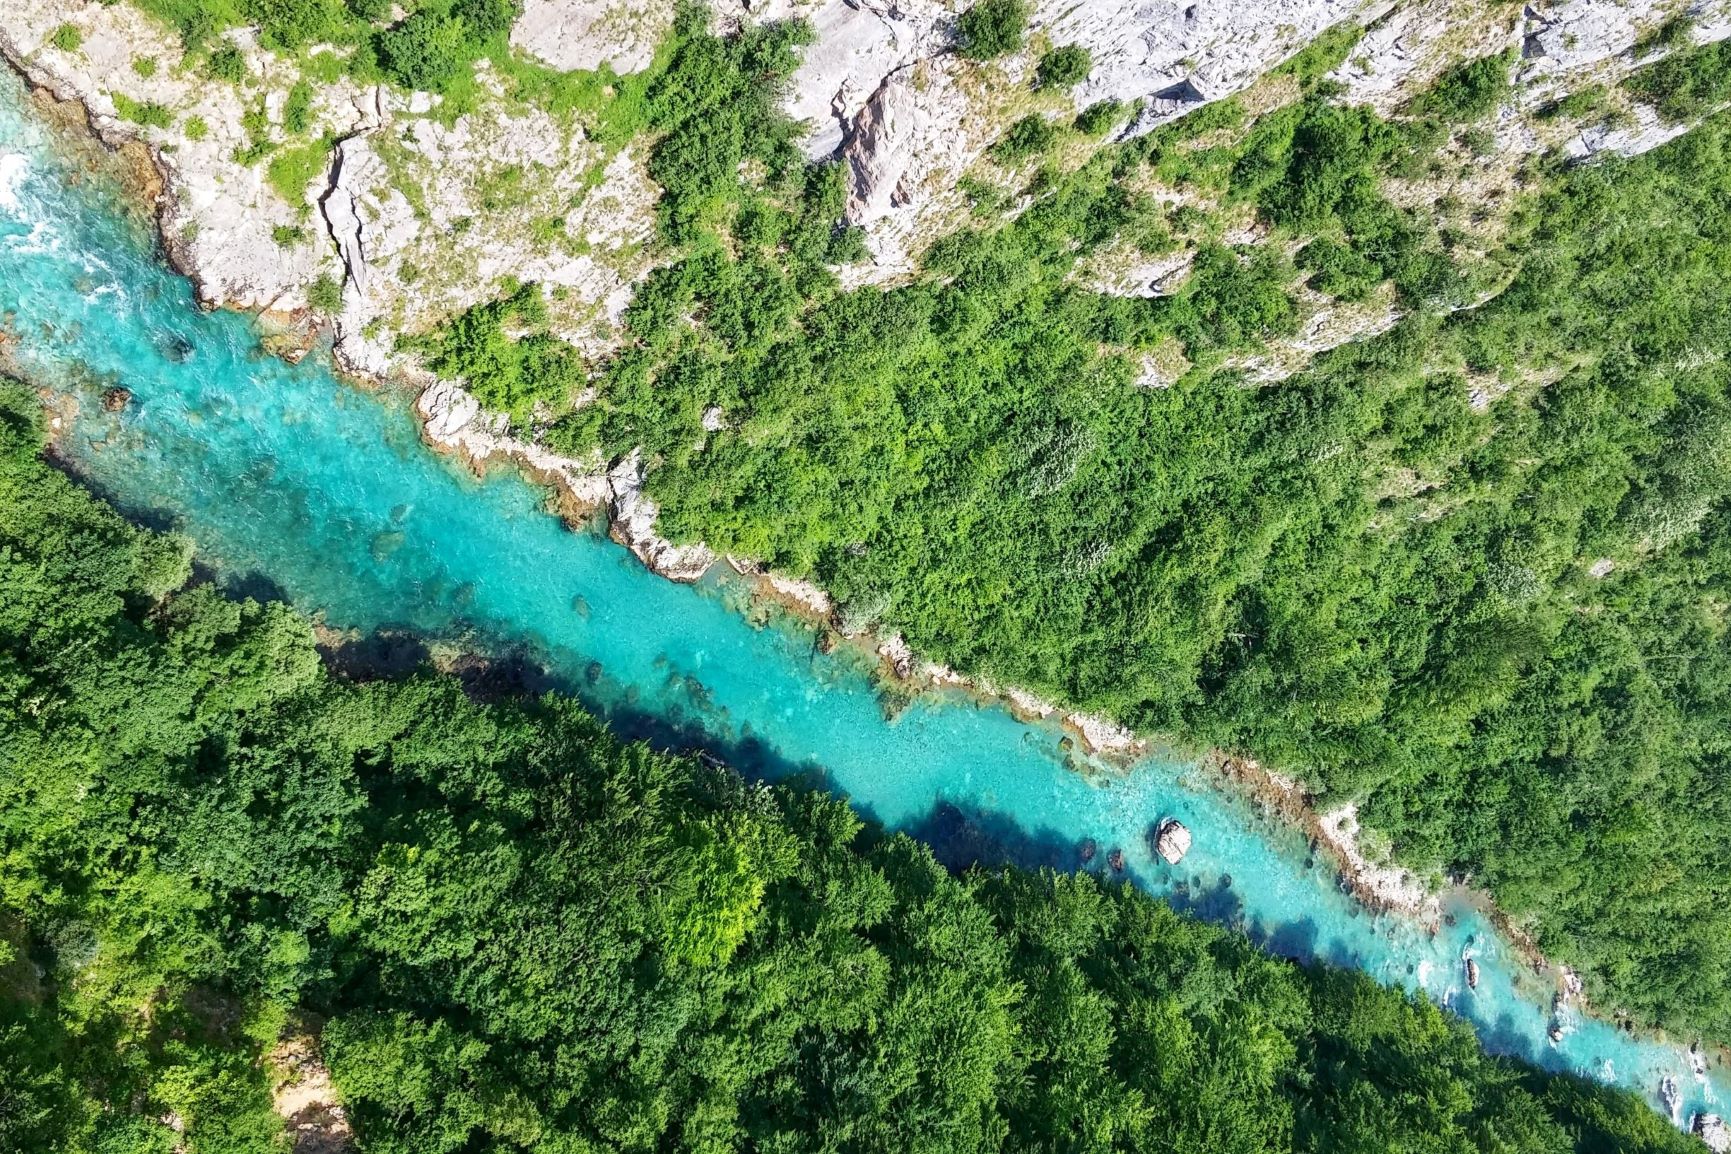 KNMtravel DMC, KNMexclusive, Montenegro, Tara río, actividades, rafting, barbacoa